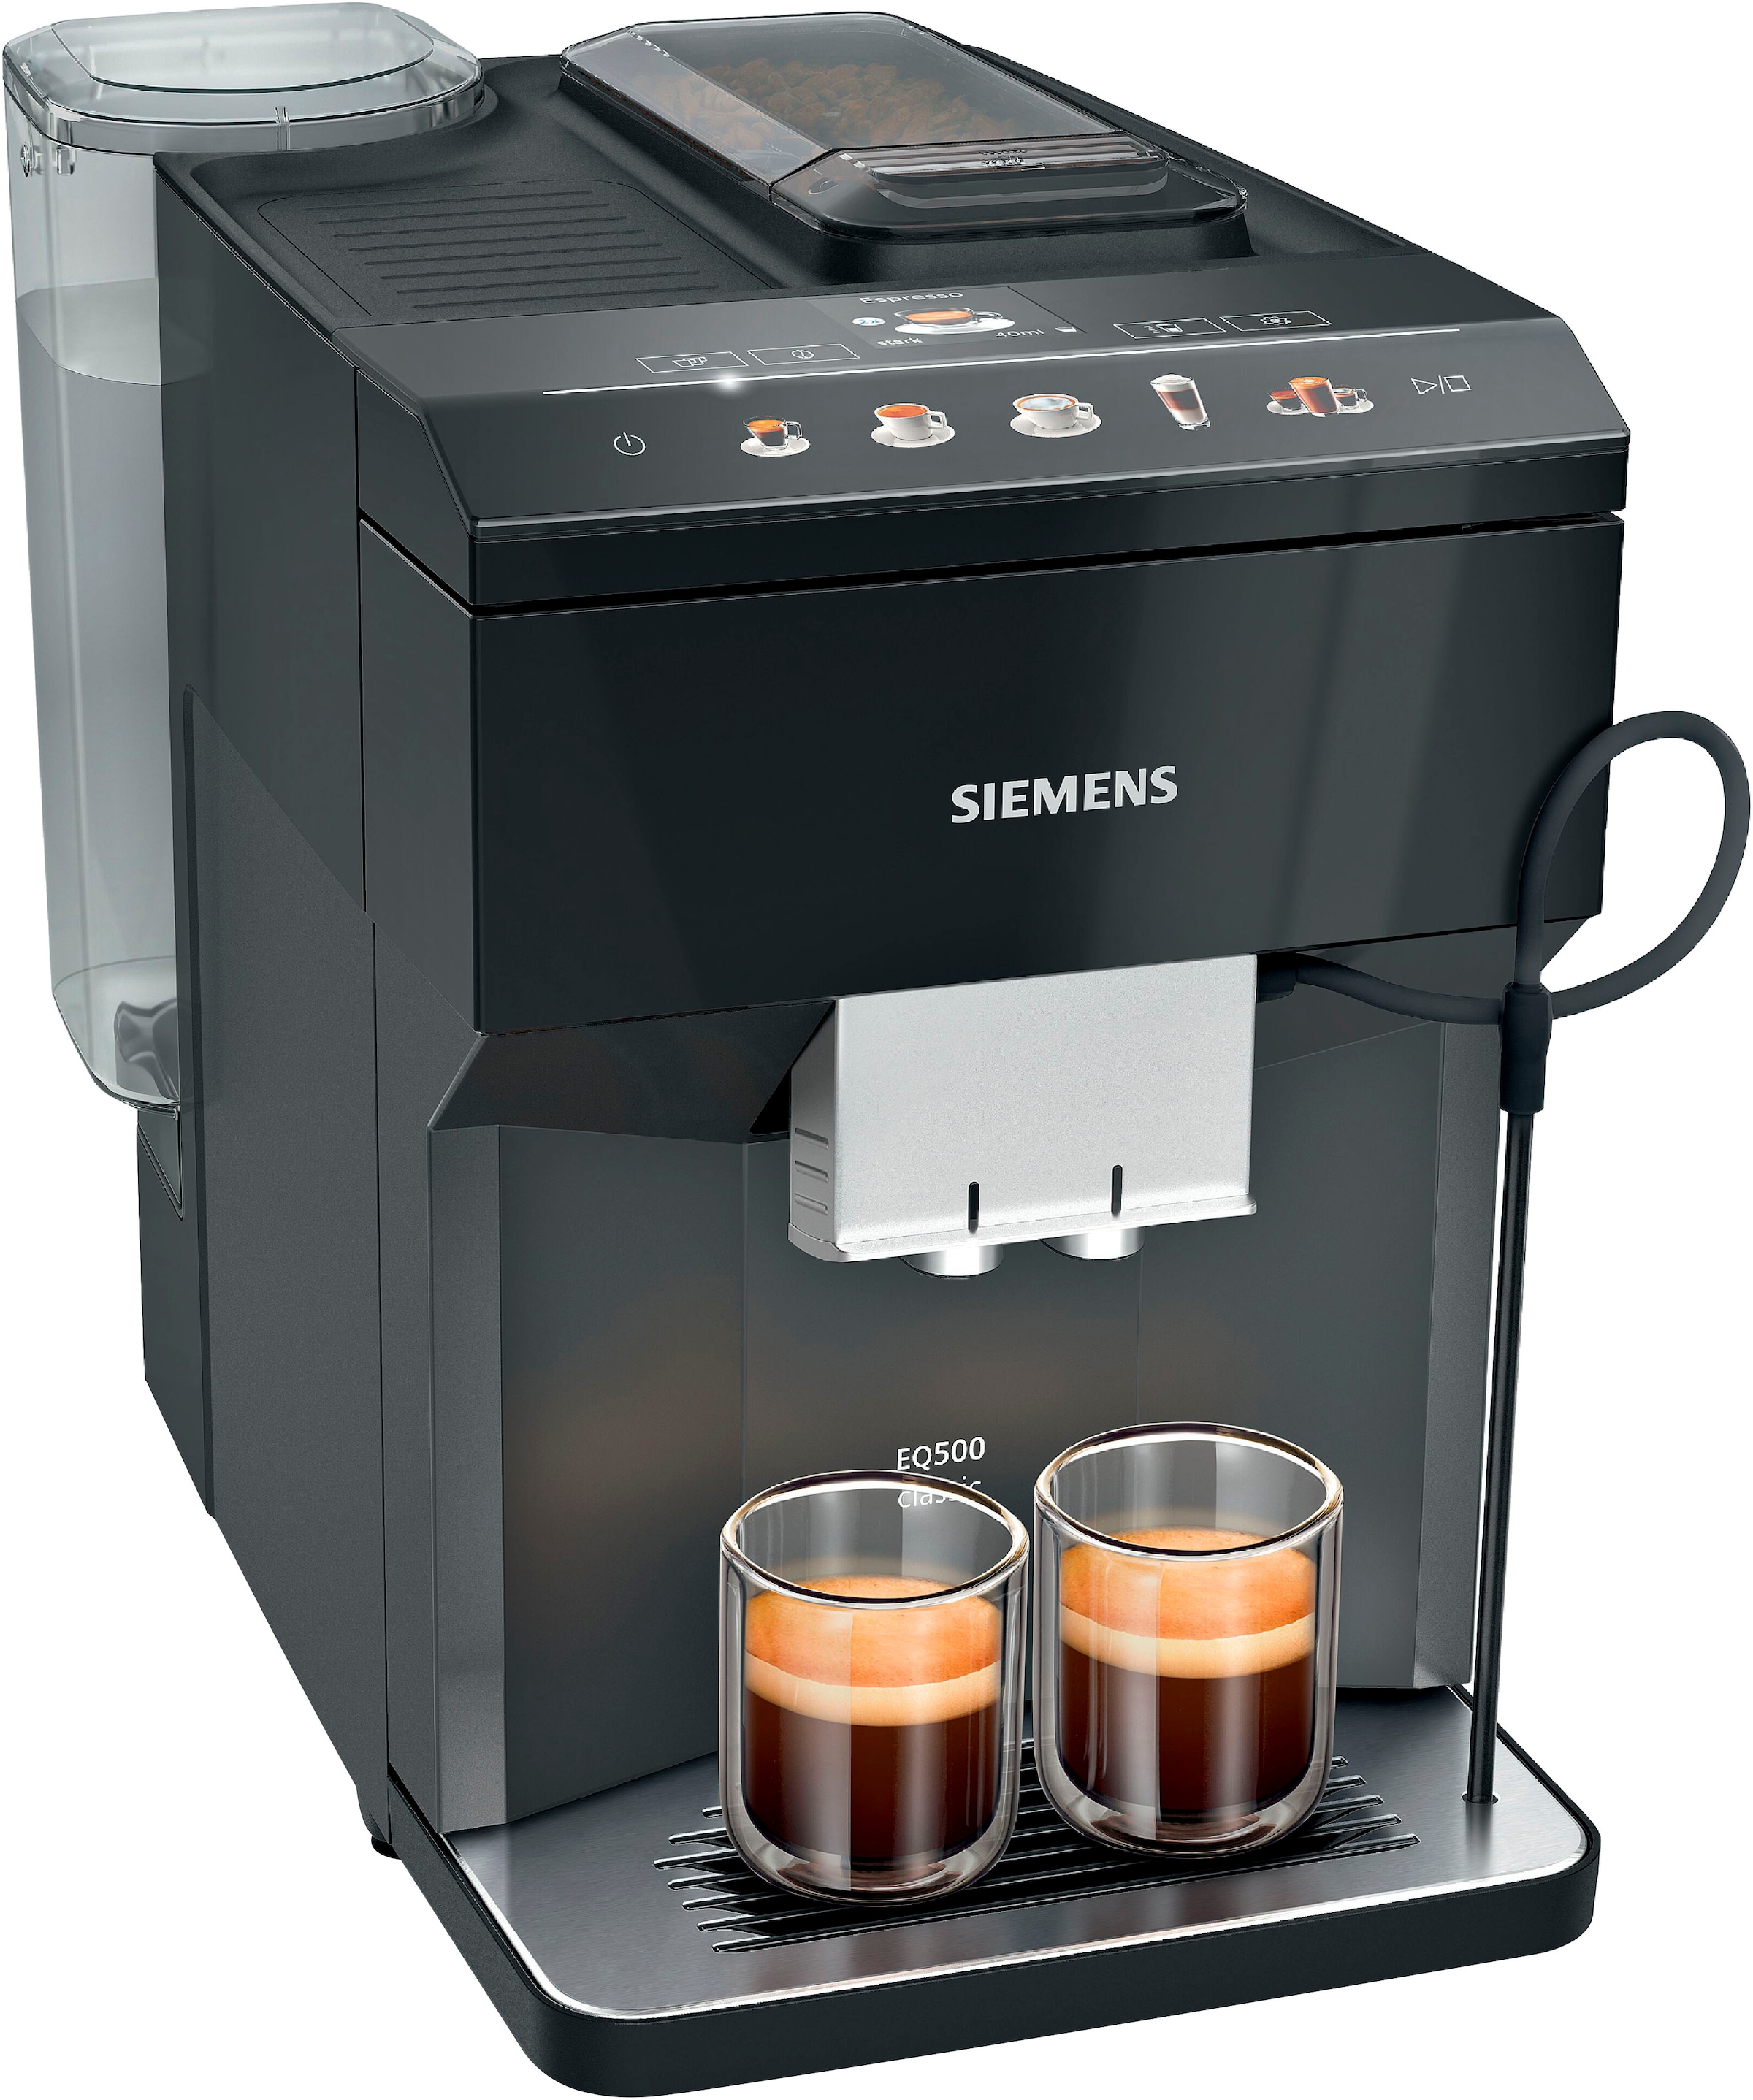 SIEMENS Kaffeevollautomat classic TP513D09«, viele bestellen Spezialitäten,Doppeltassenfunktion, auto.Dampfreinigung,schwarz »EQ500